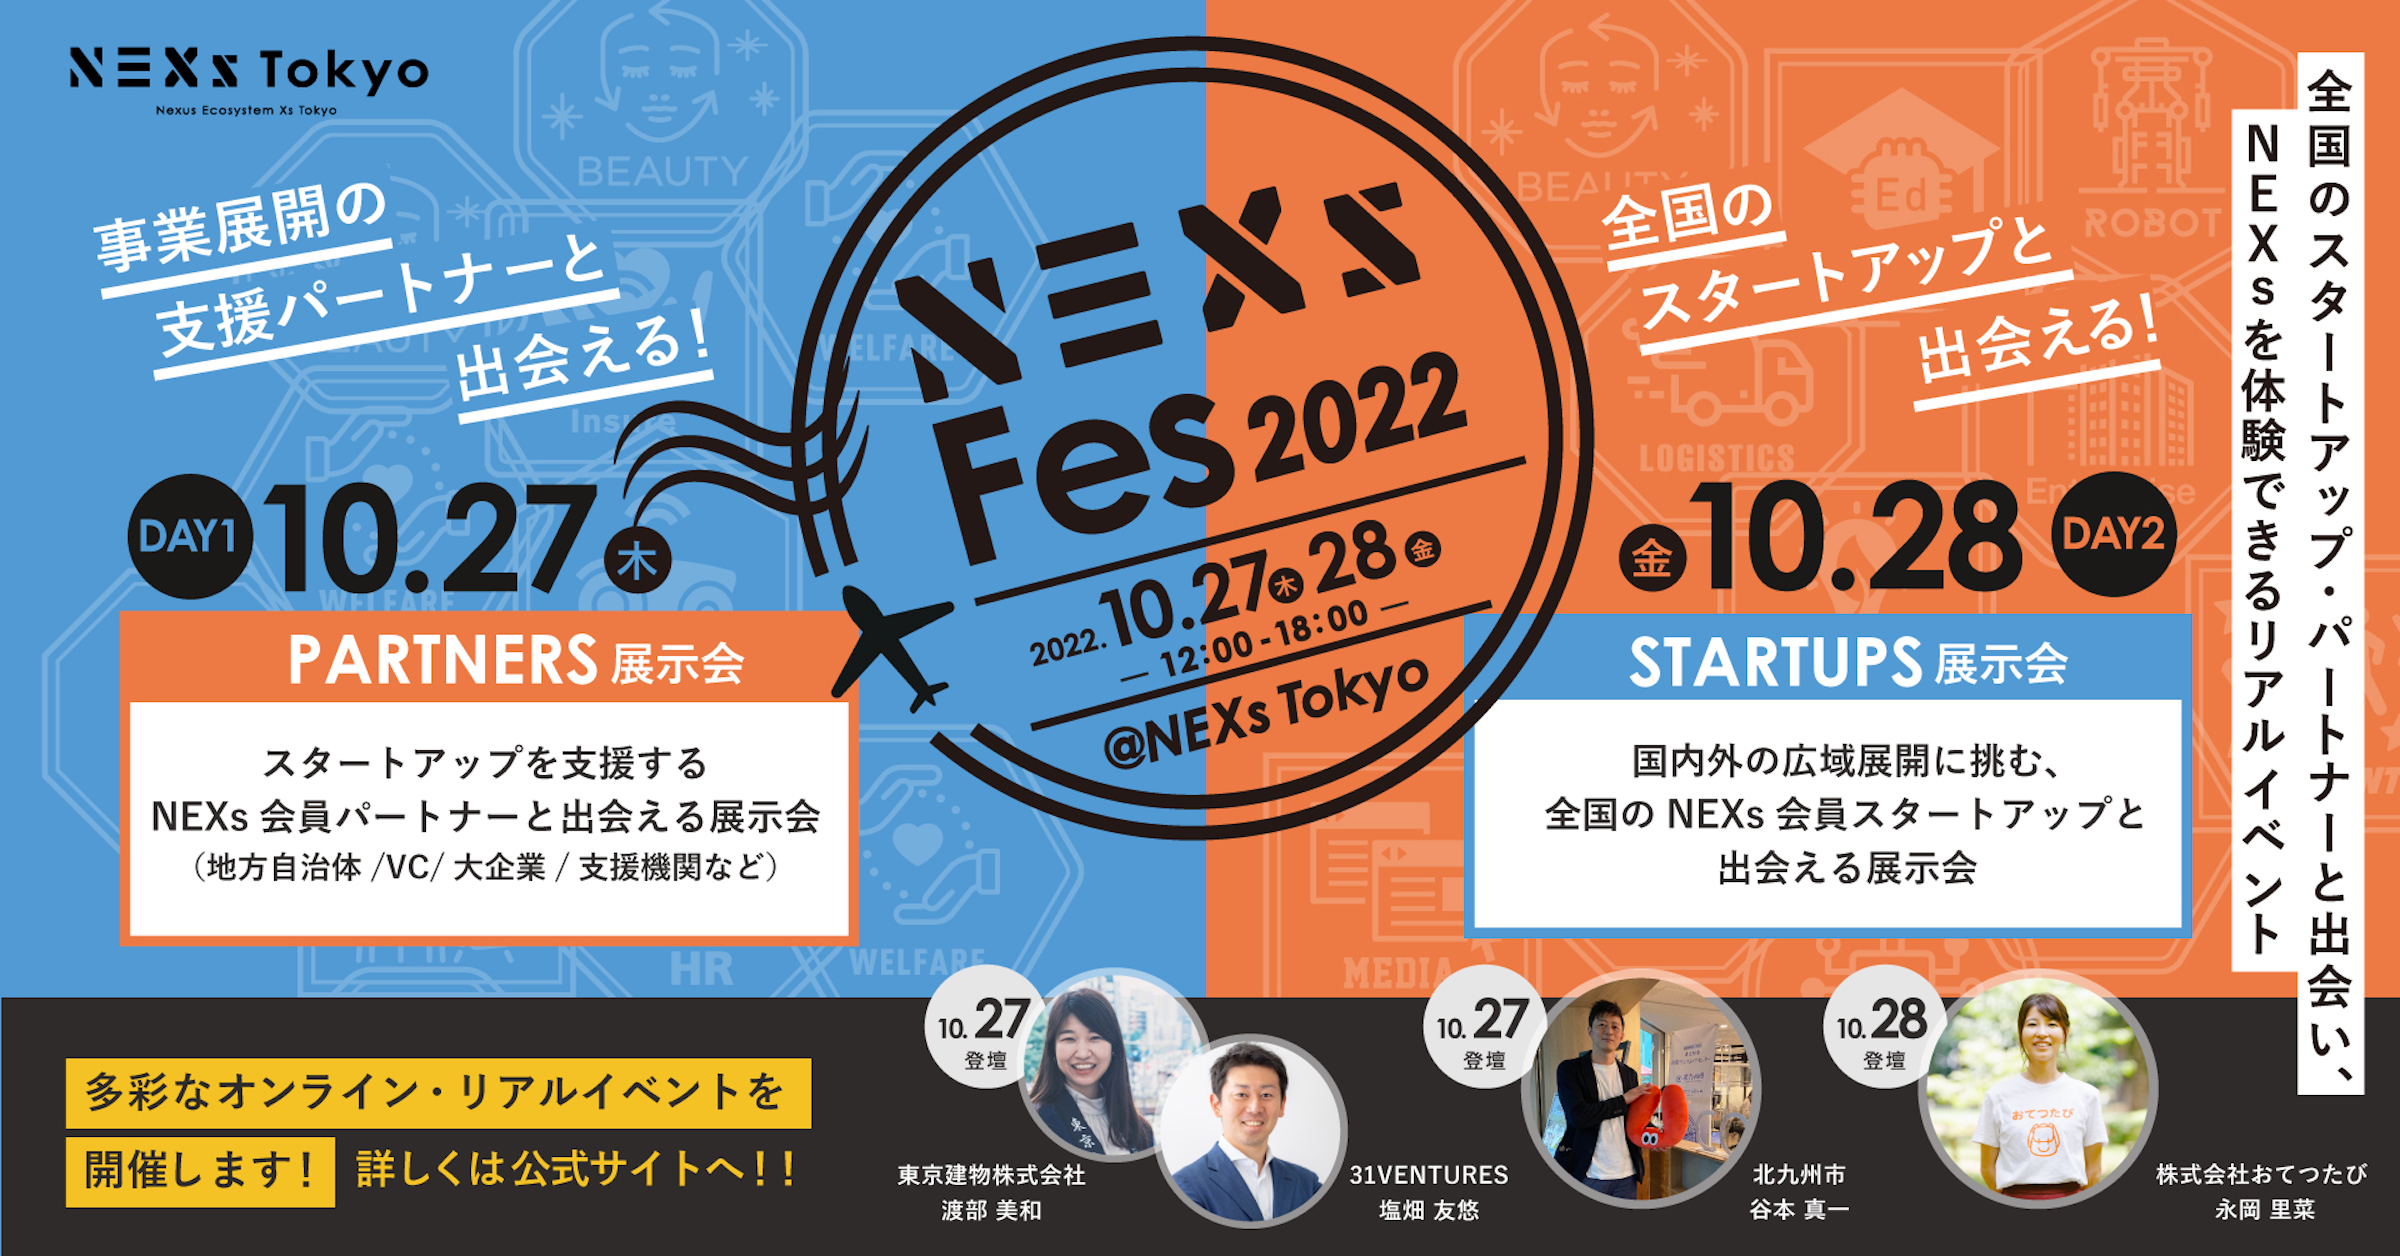 全国のスタートアップ&事業展開パートナーと出会い、NEXsを体験できるリアルイベント「NEXs Fes 2022」